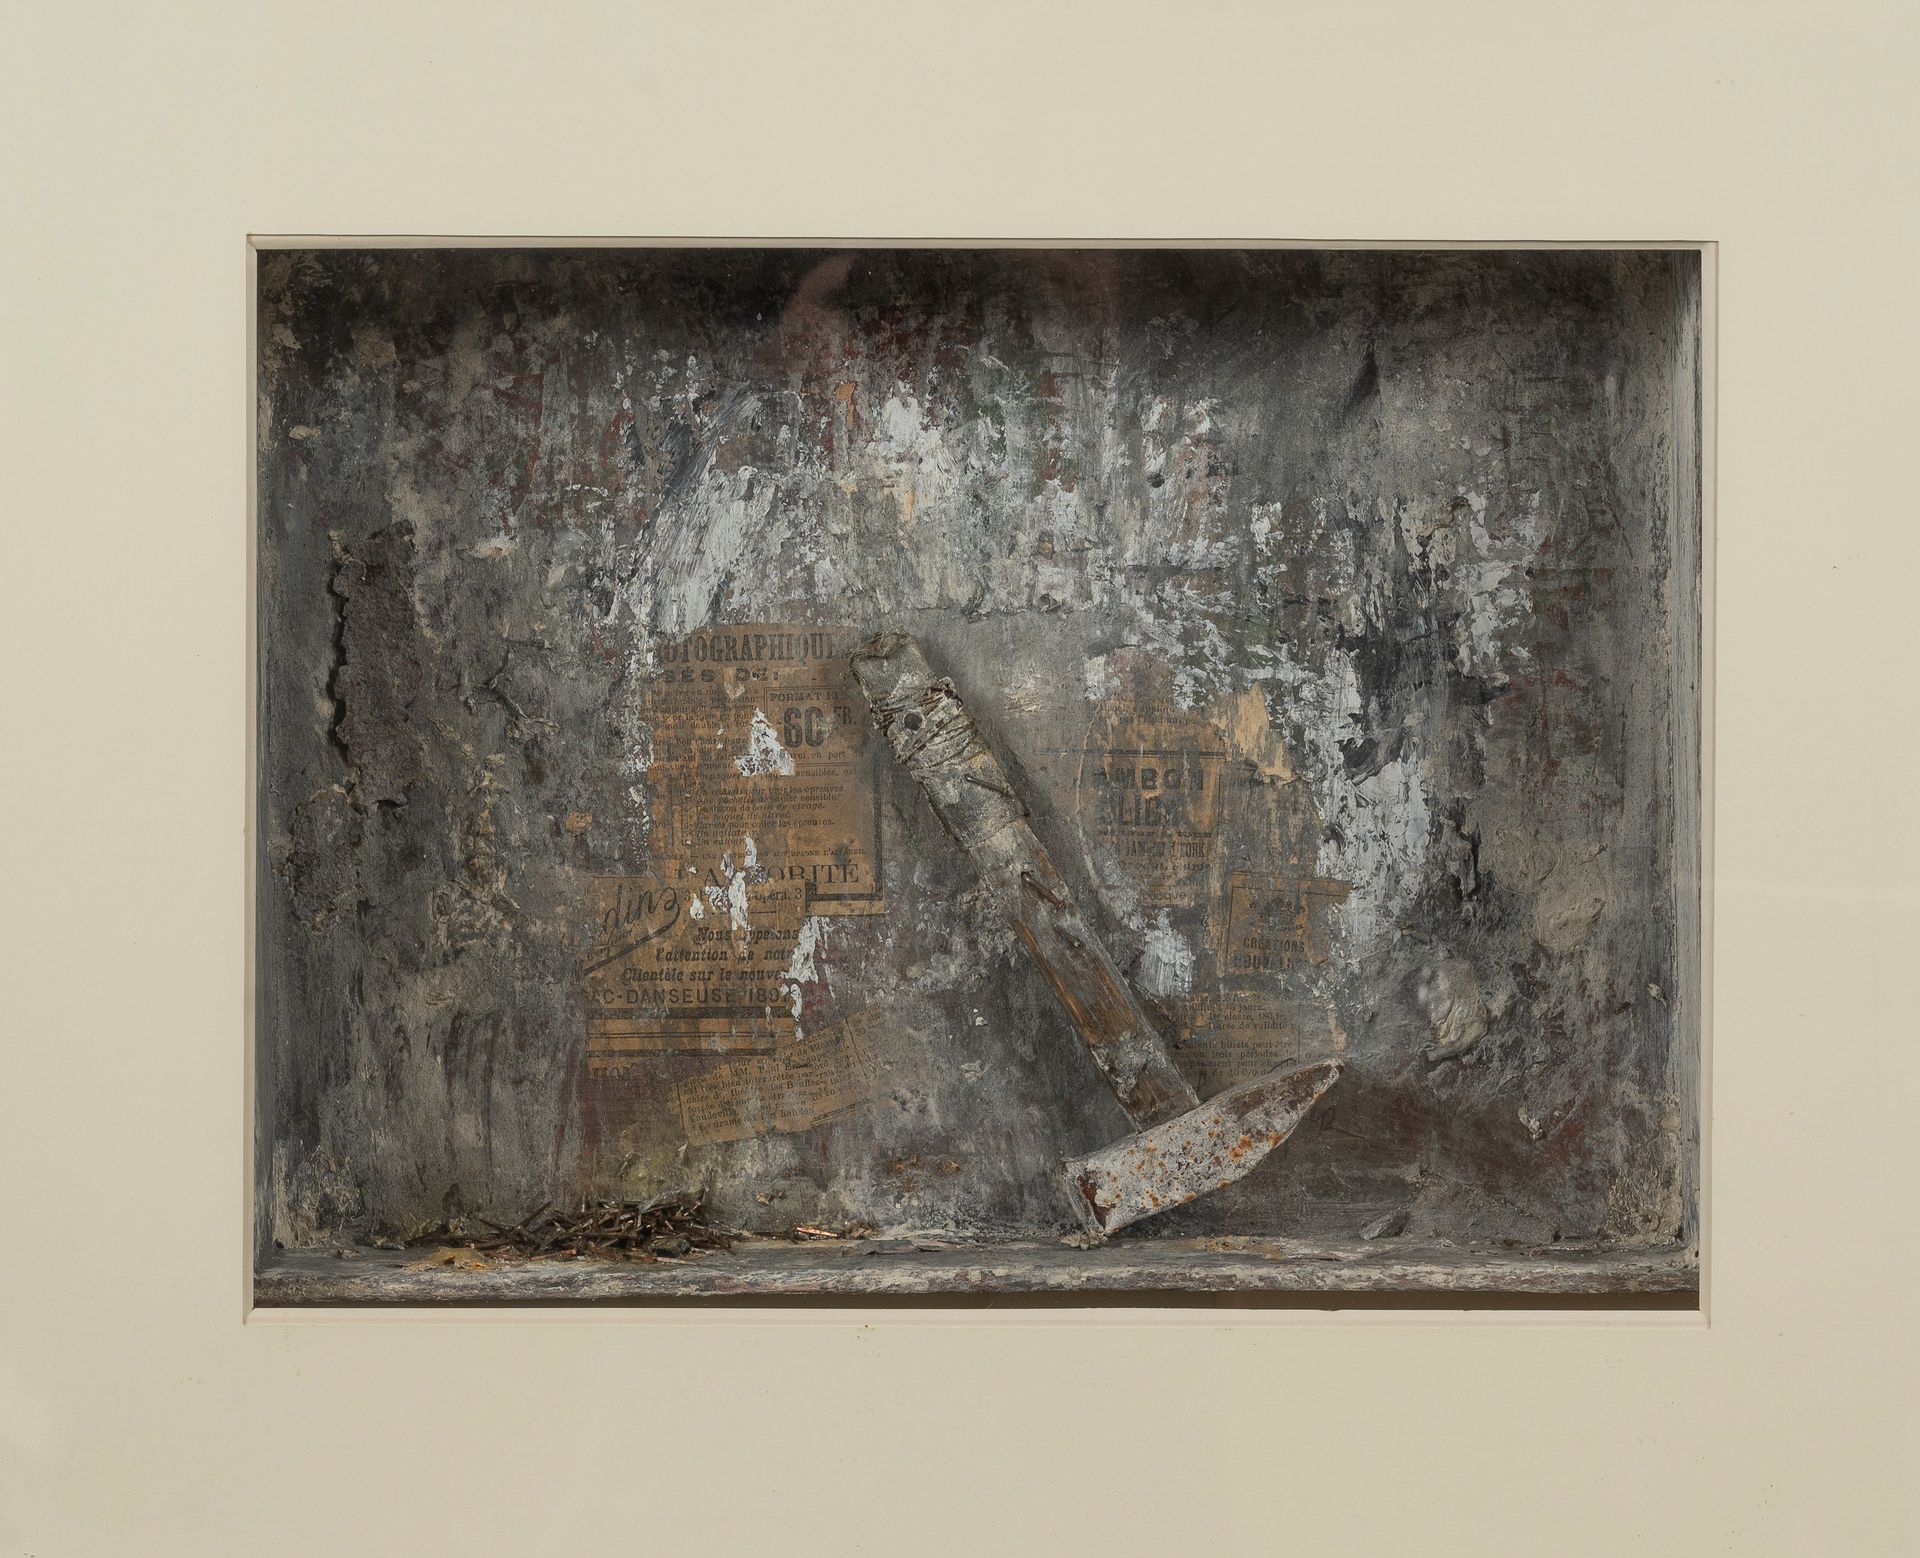 Null 尤里-列昂尼多维奇-库珀（生于1940年

钉子锤 (2000)

混合媒体，纸-金属-布-木的拼贴画。

33 x 45厘米。